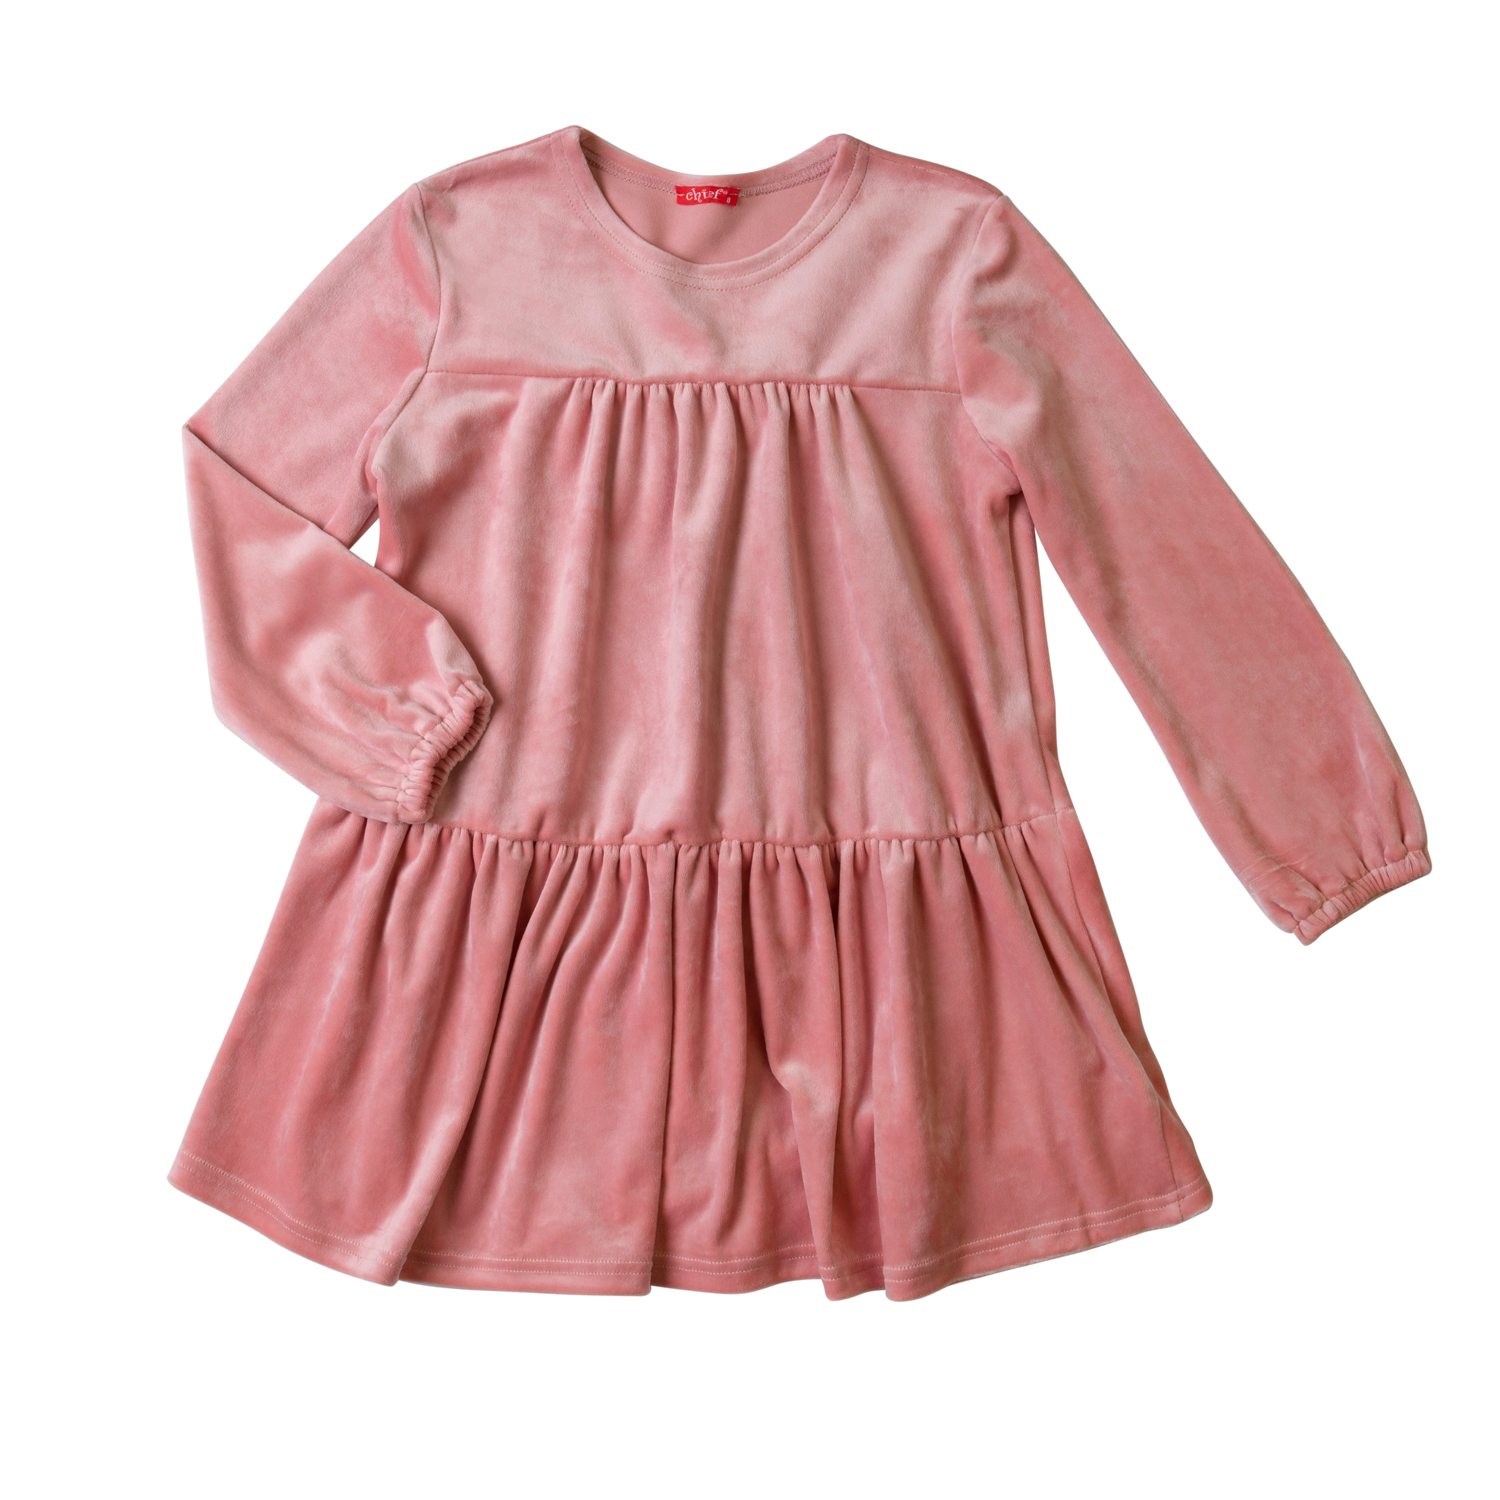 Φόρεμα χειμερινό βελουτέ σε ροζ χρώμα με σούρες εμπρός και πίσω -12.2003R 8 ετών 64682